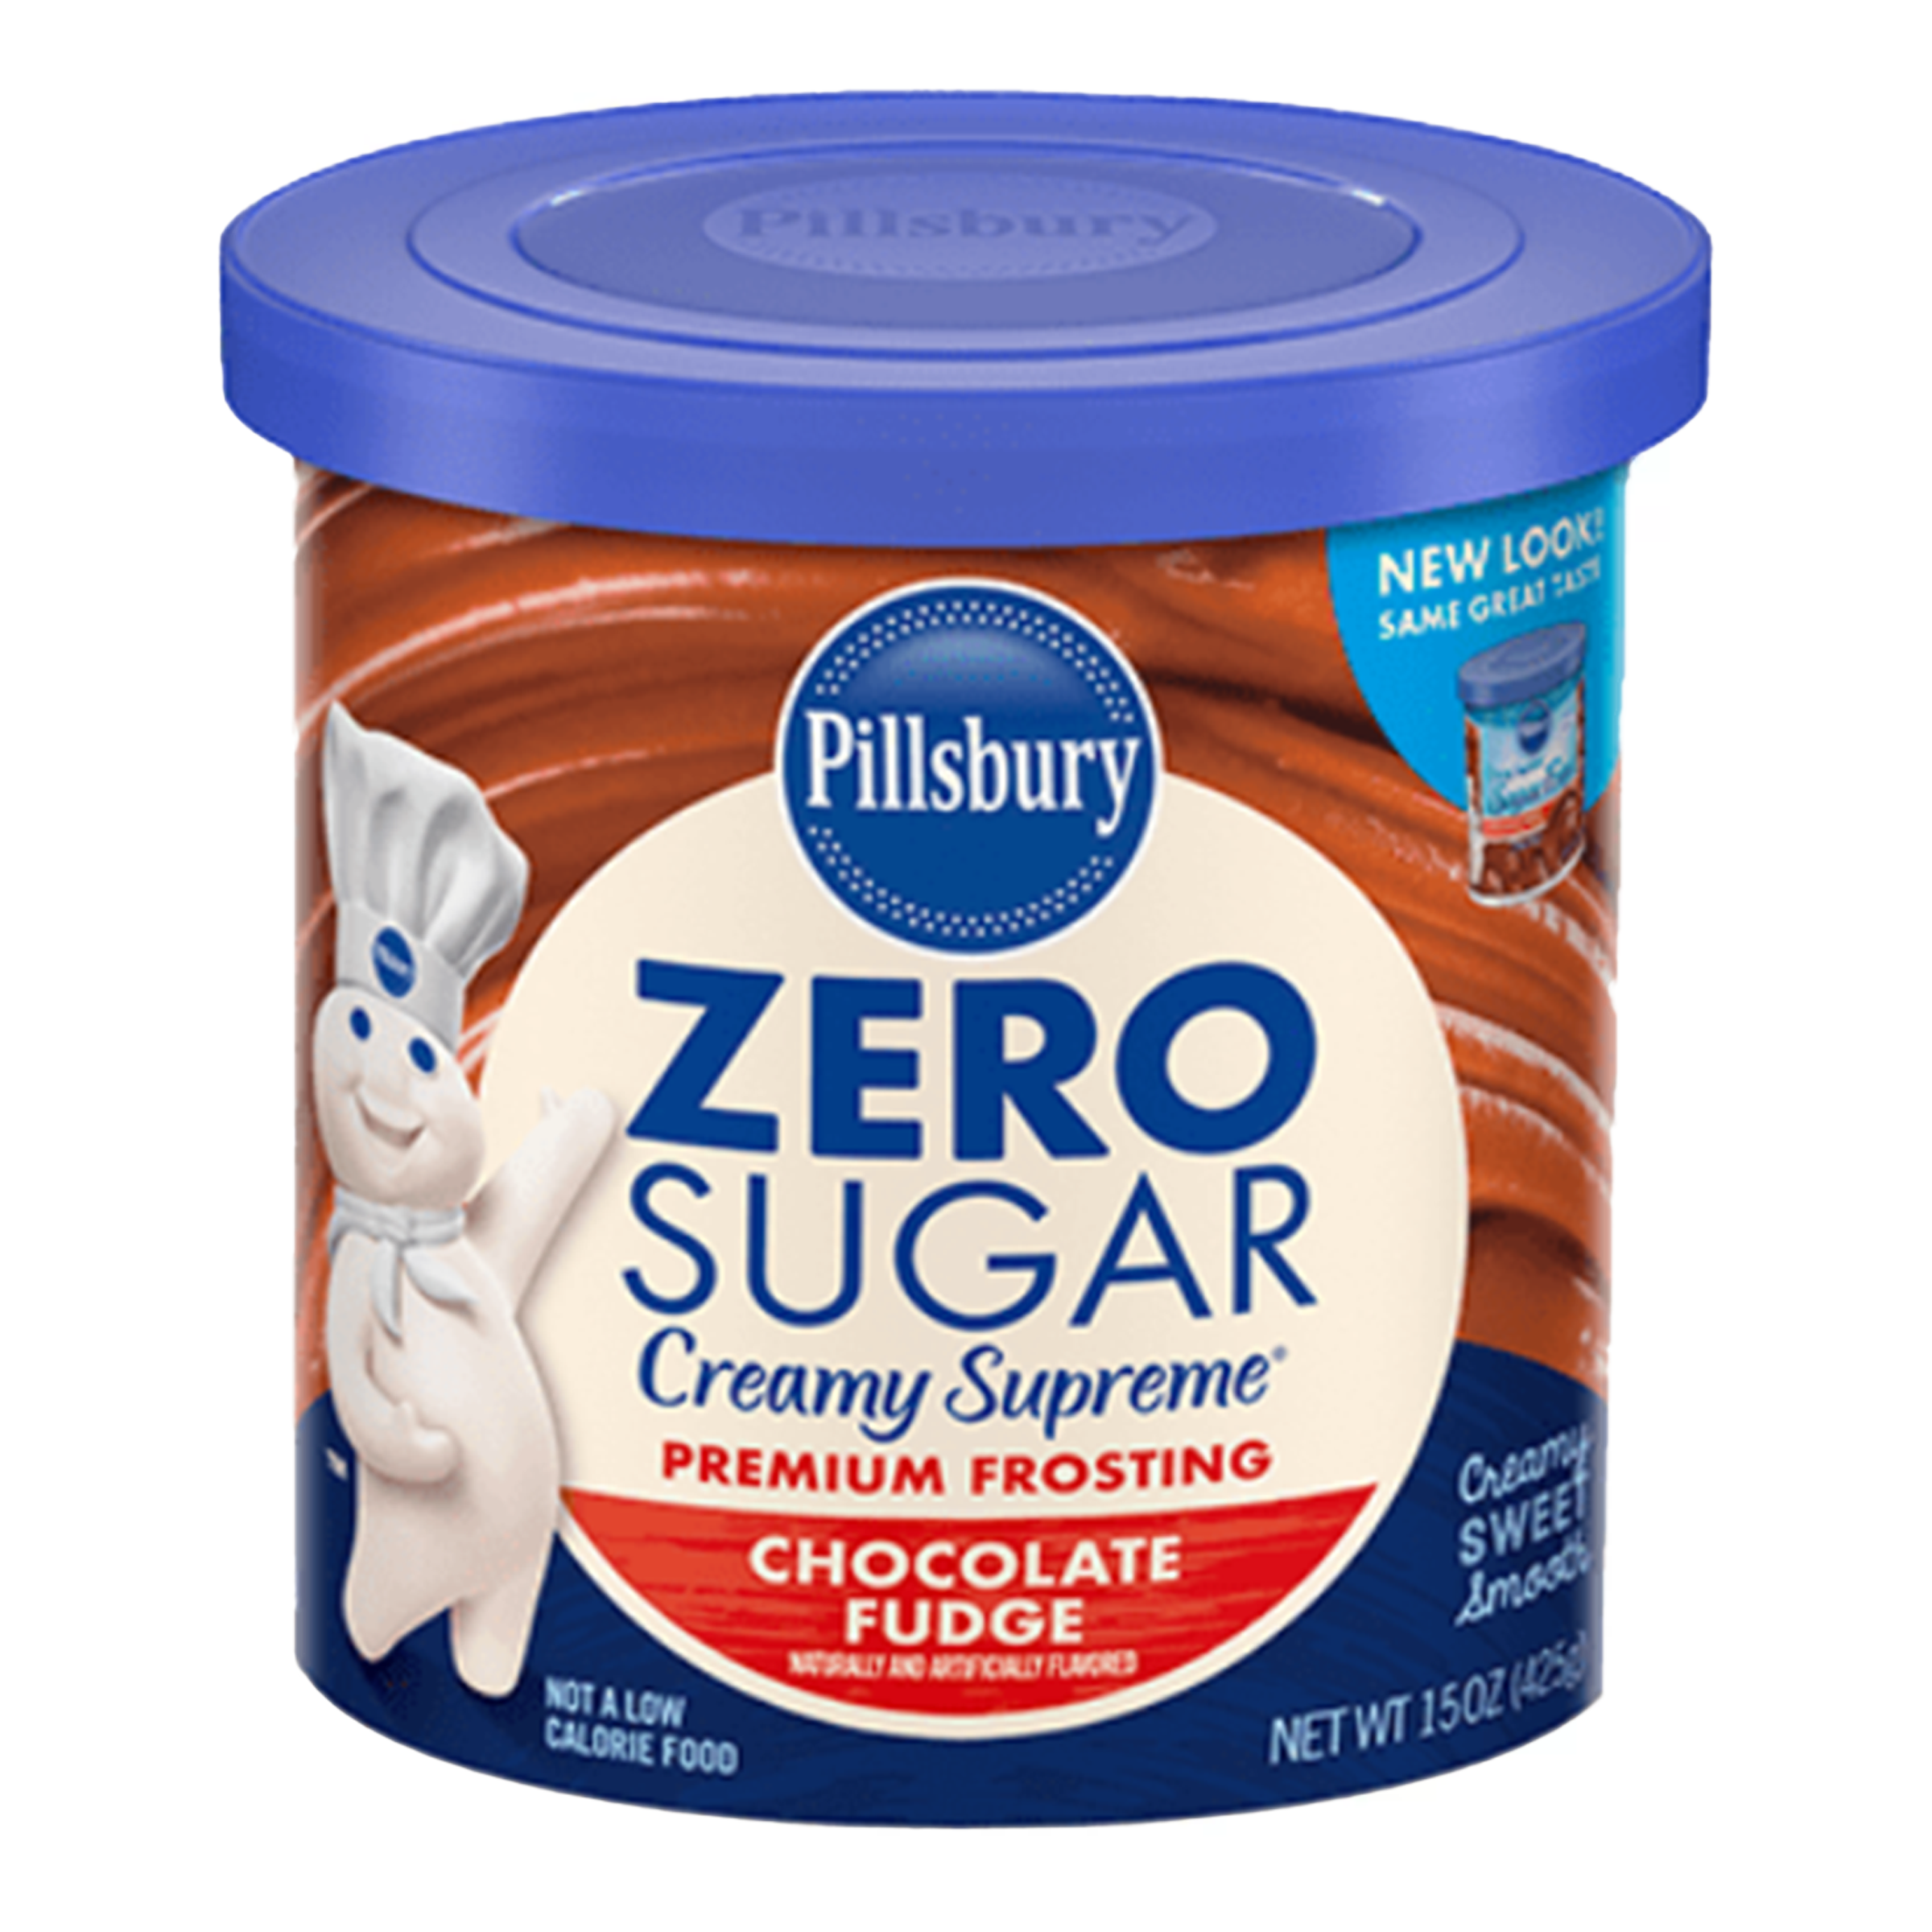 Pillsbury - Chocolate Fudge Frosting (Zero Sugar)